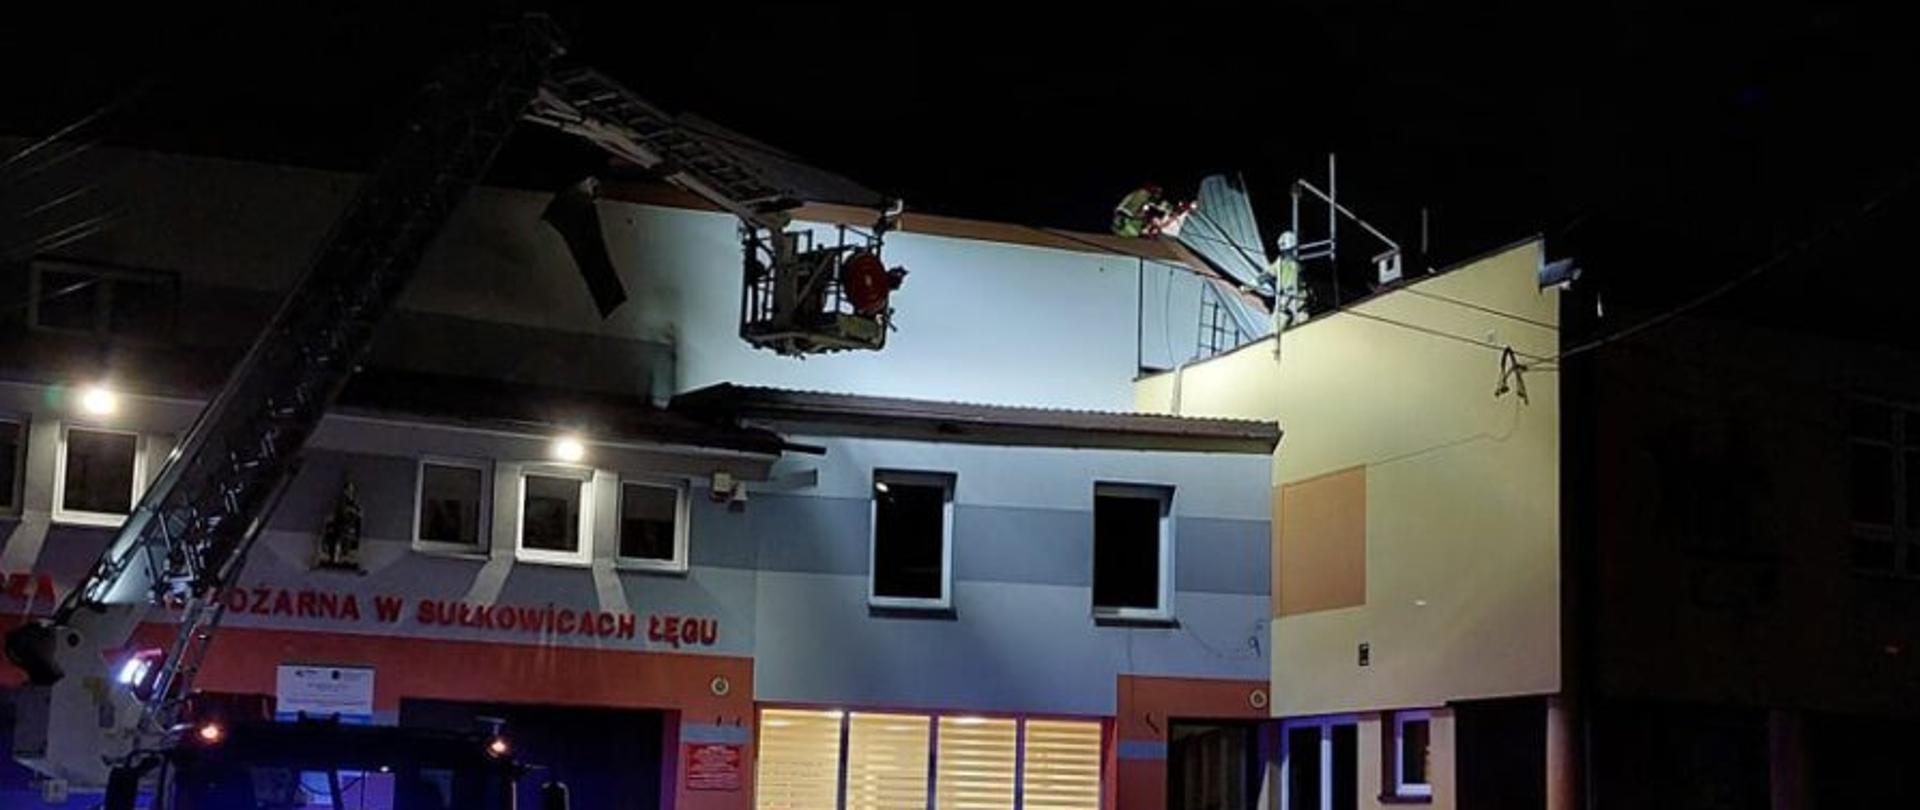 Uszkodzone poszycie dachu na budynku OSP Sułkowice Łęg. Przed remizą podnośnik strażacki i strażacy, którzy będą ściągać uszkodzone elementy dachu. Pora nocna.